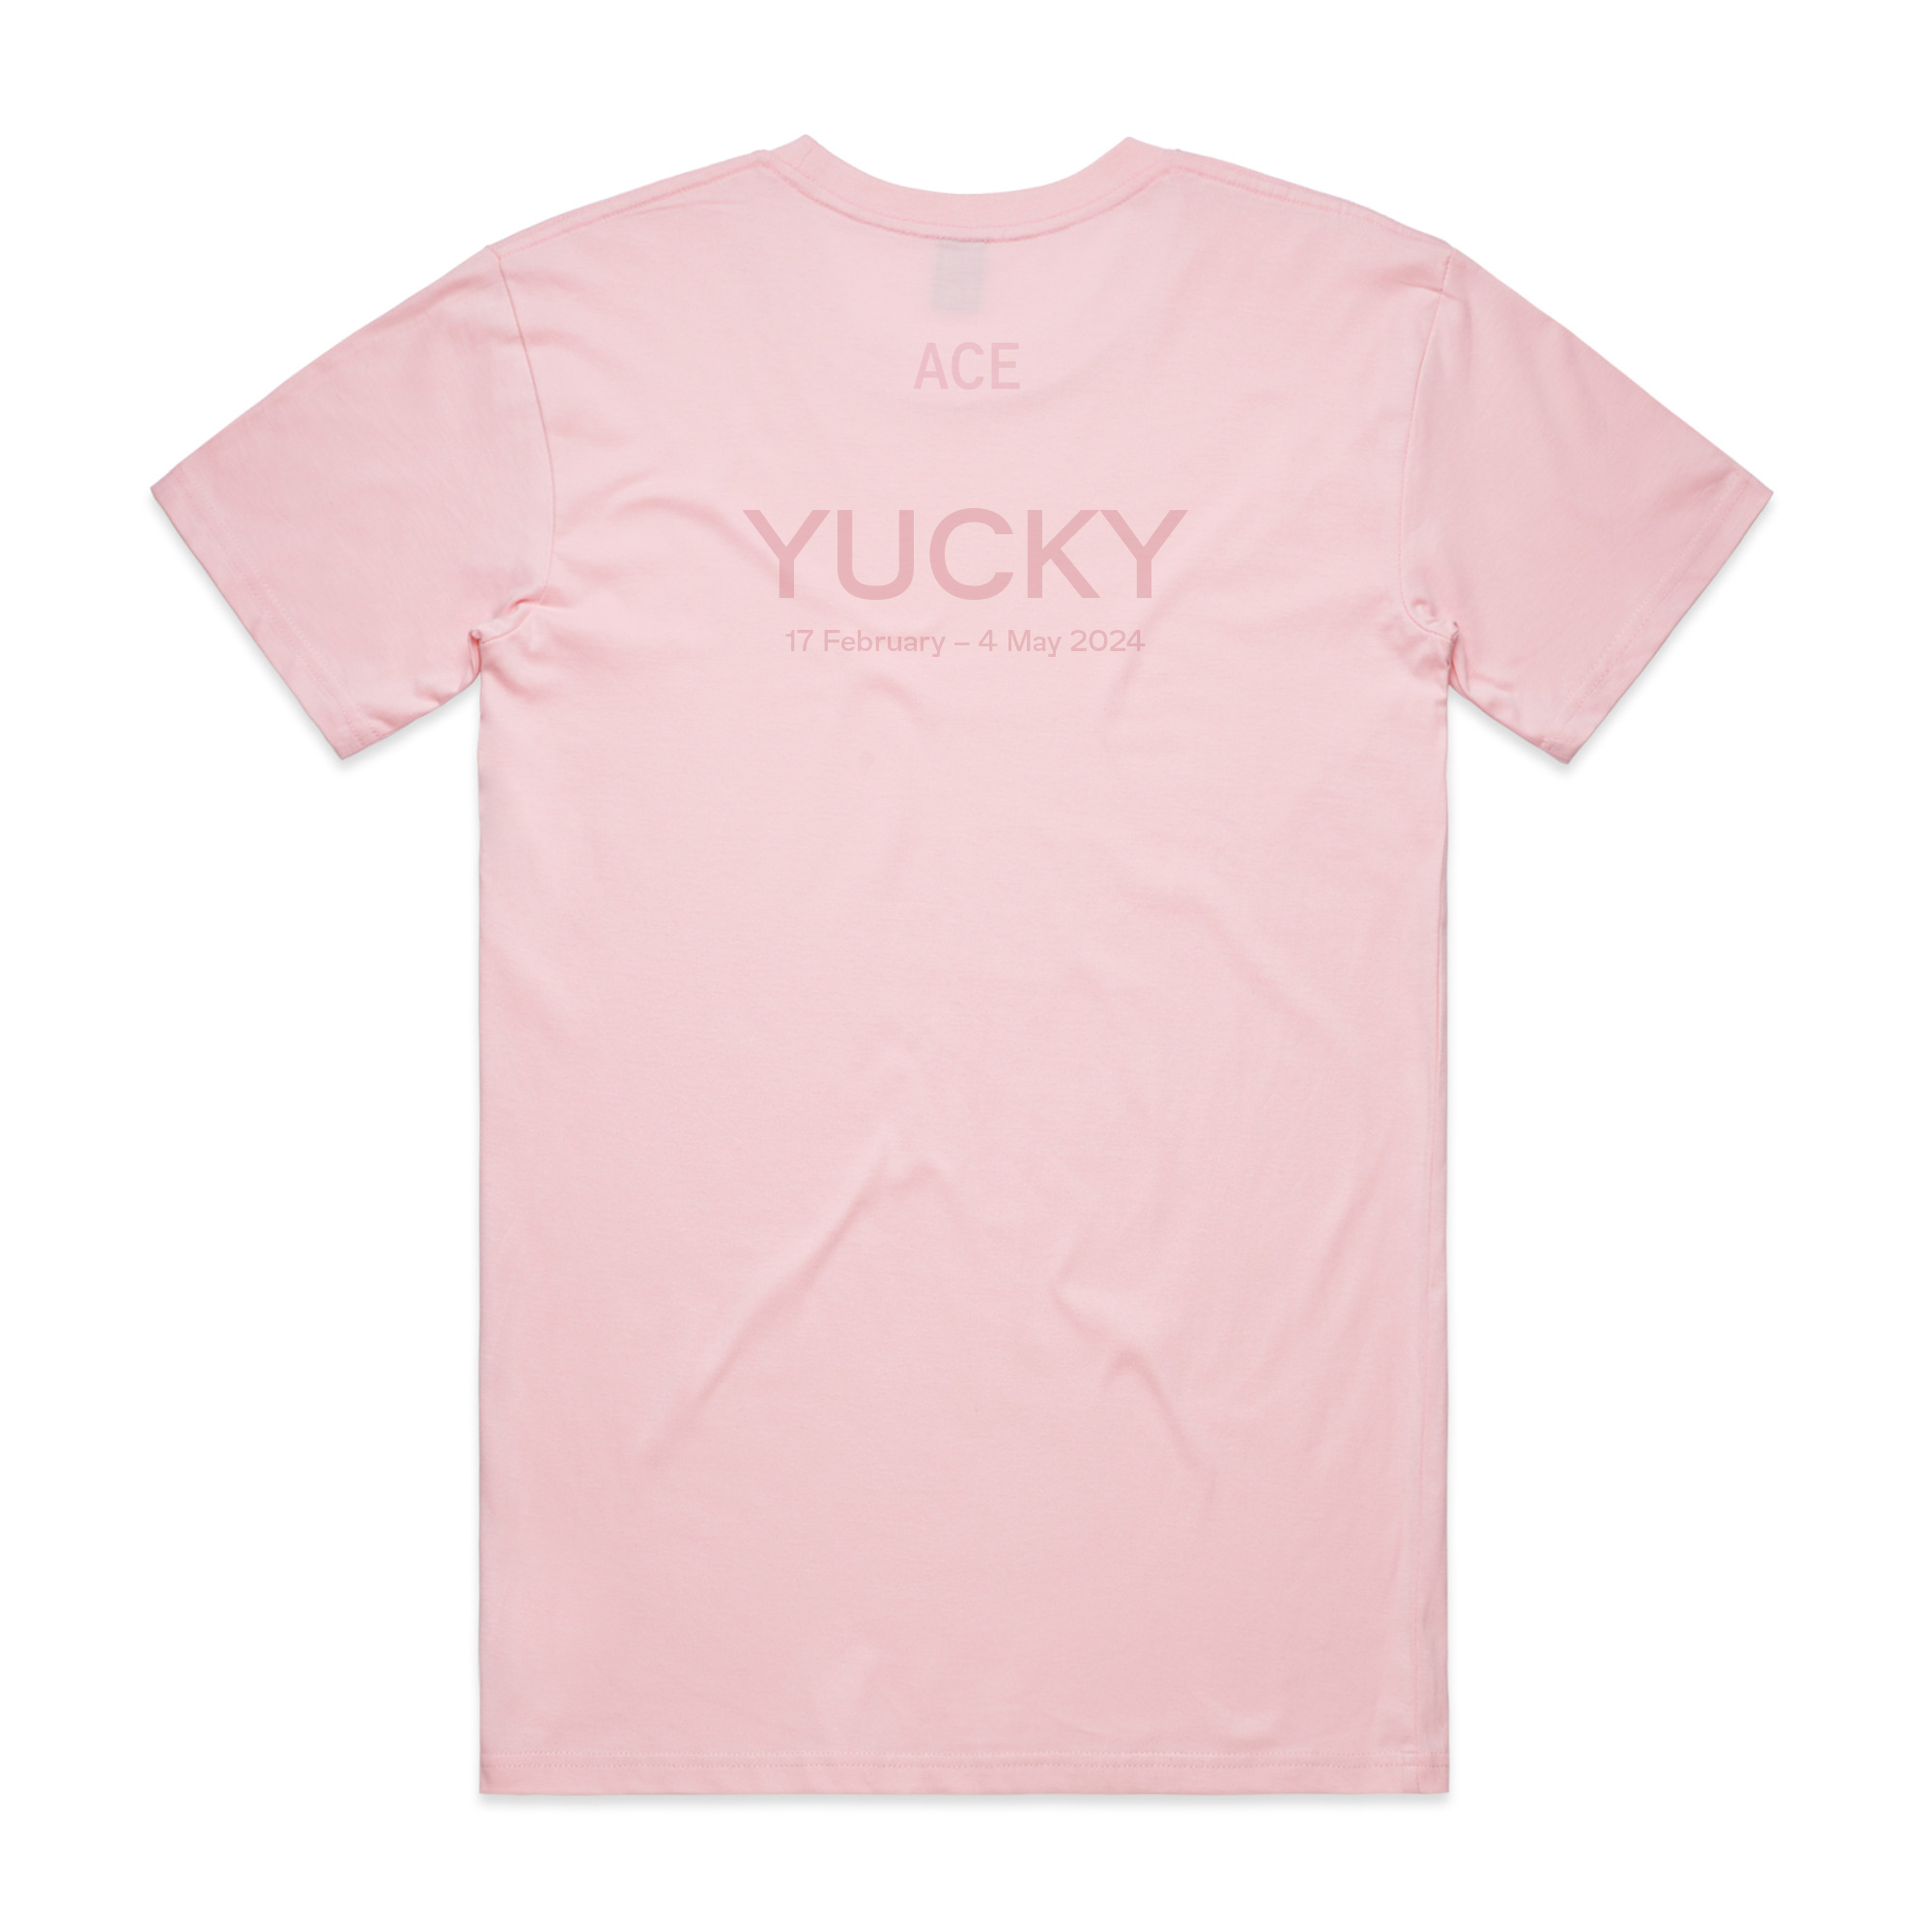 Sam Petersen 'Yucky' t-shirt